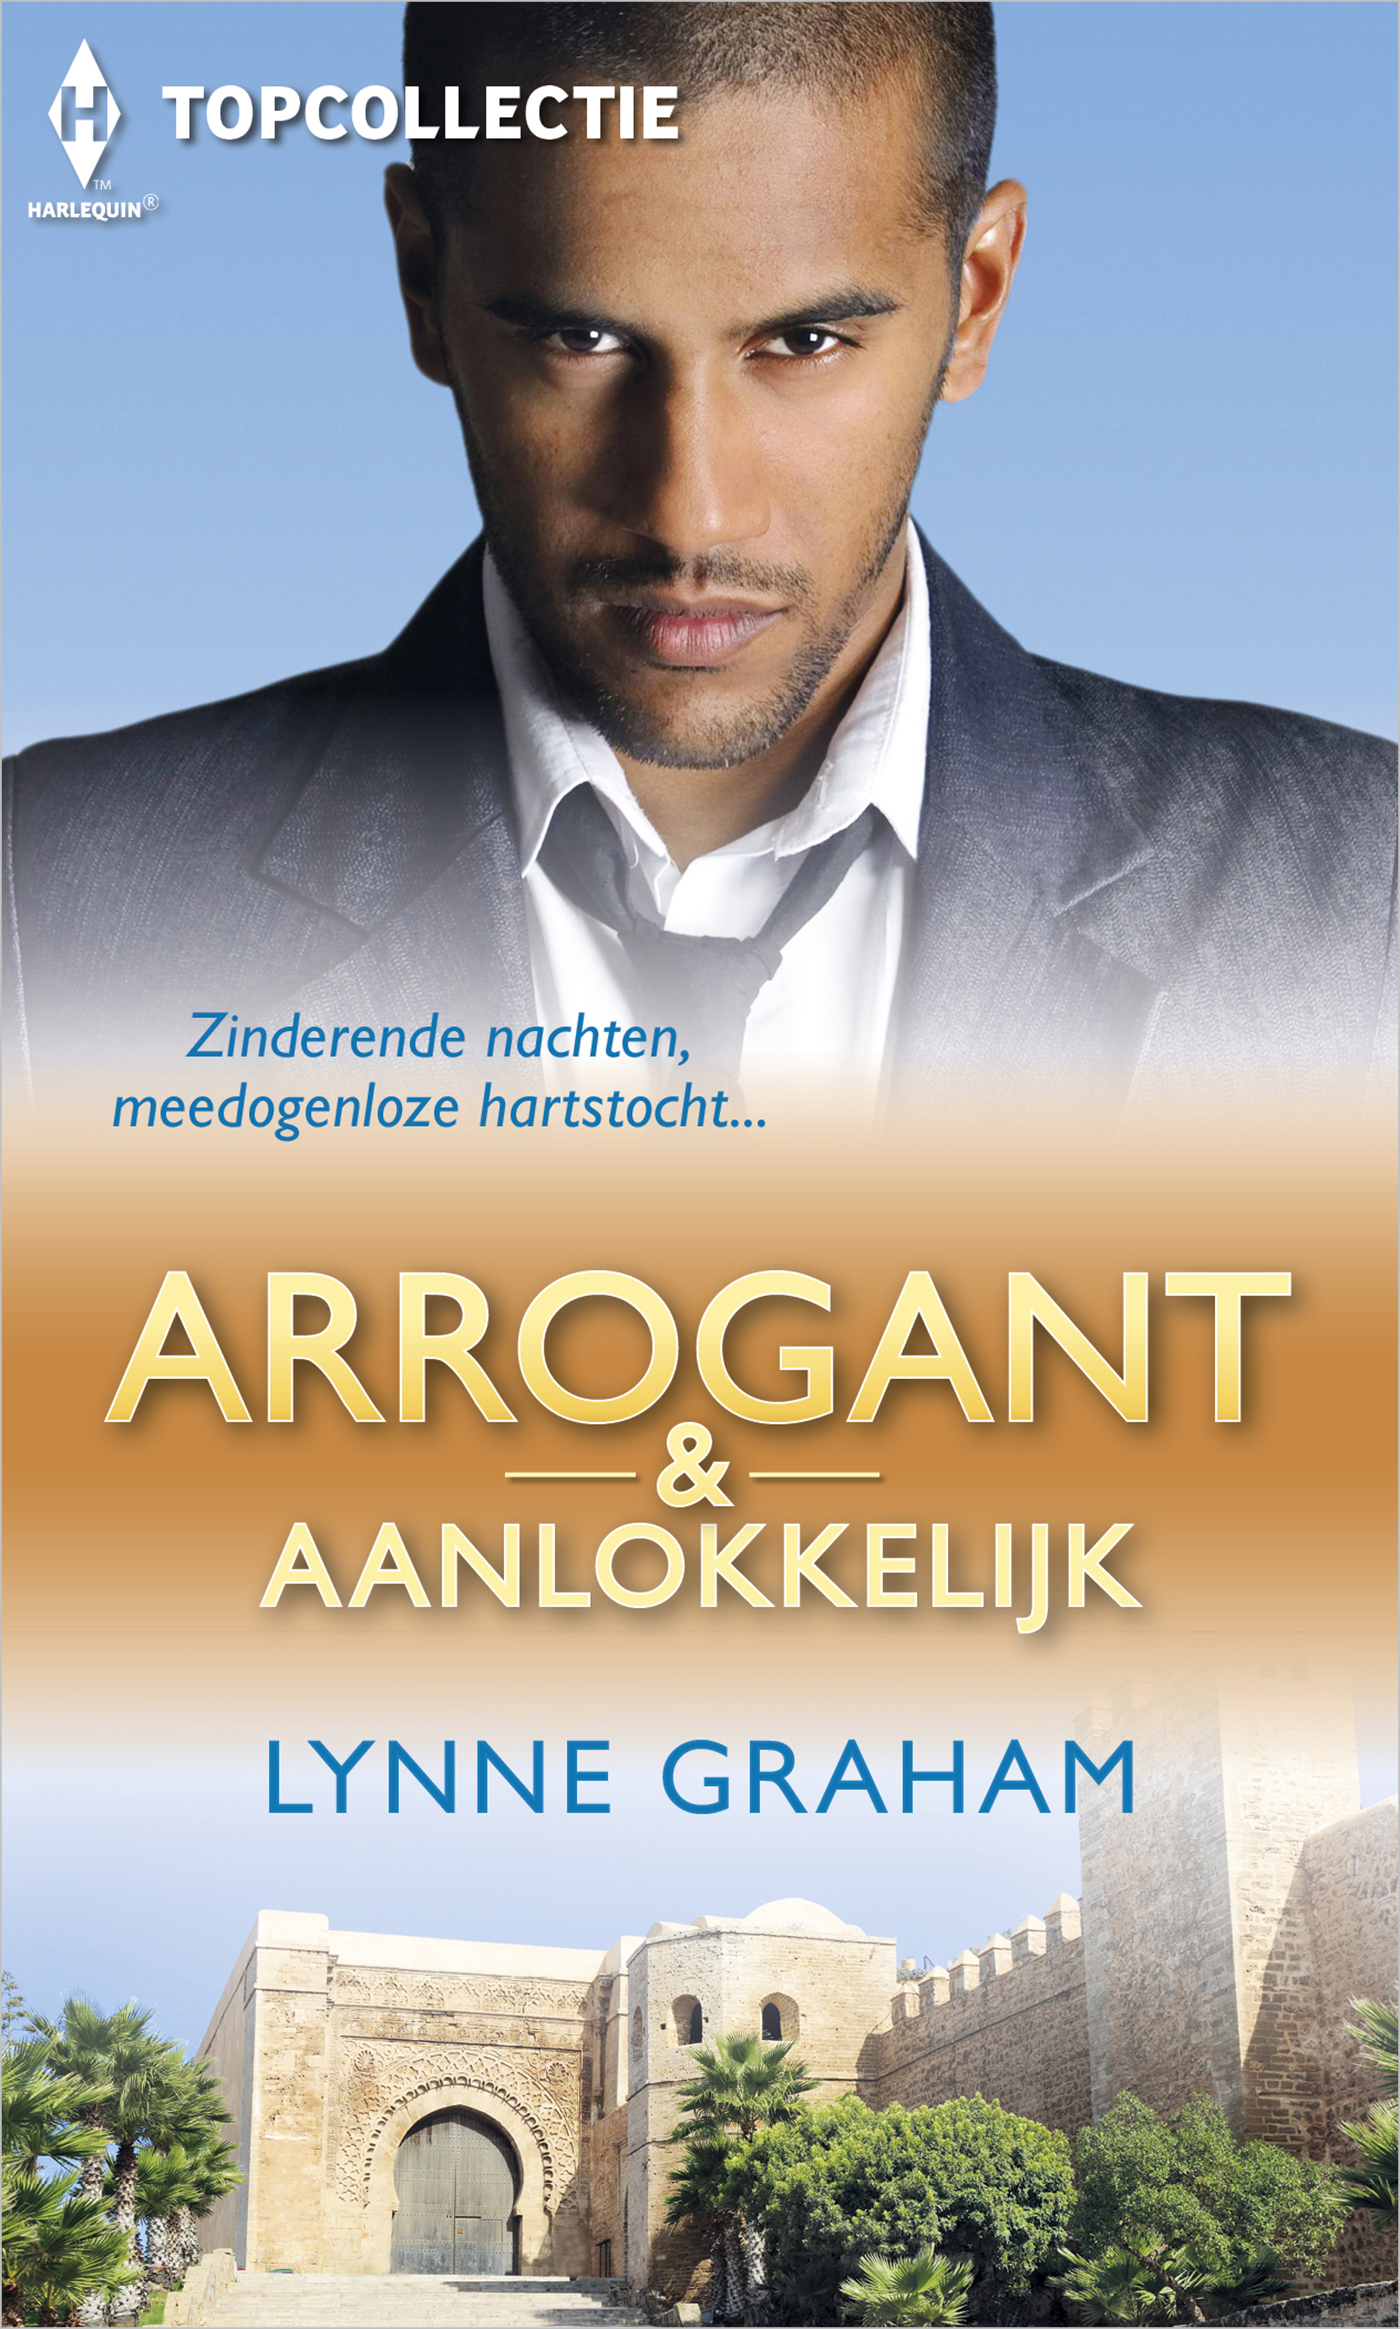 Arrogant & aanlokkelijk (3-in-1) (Ebook)